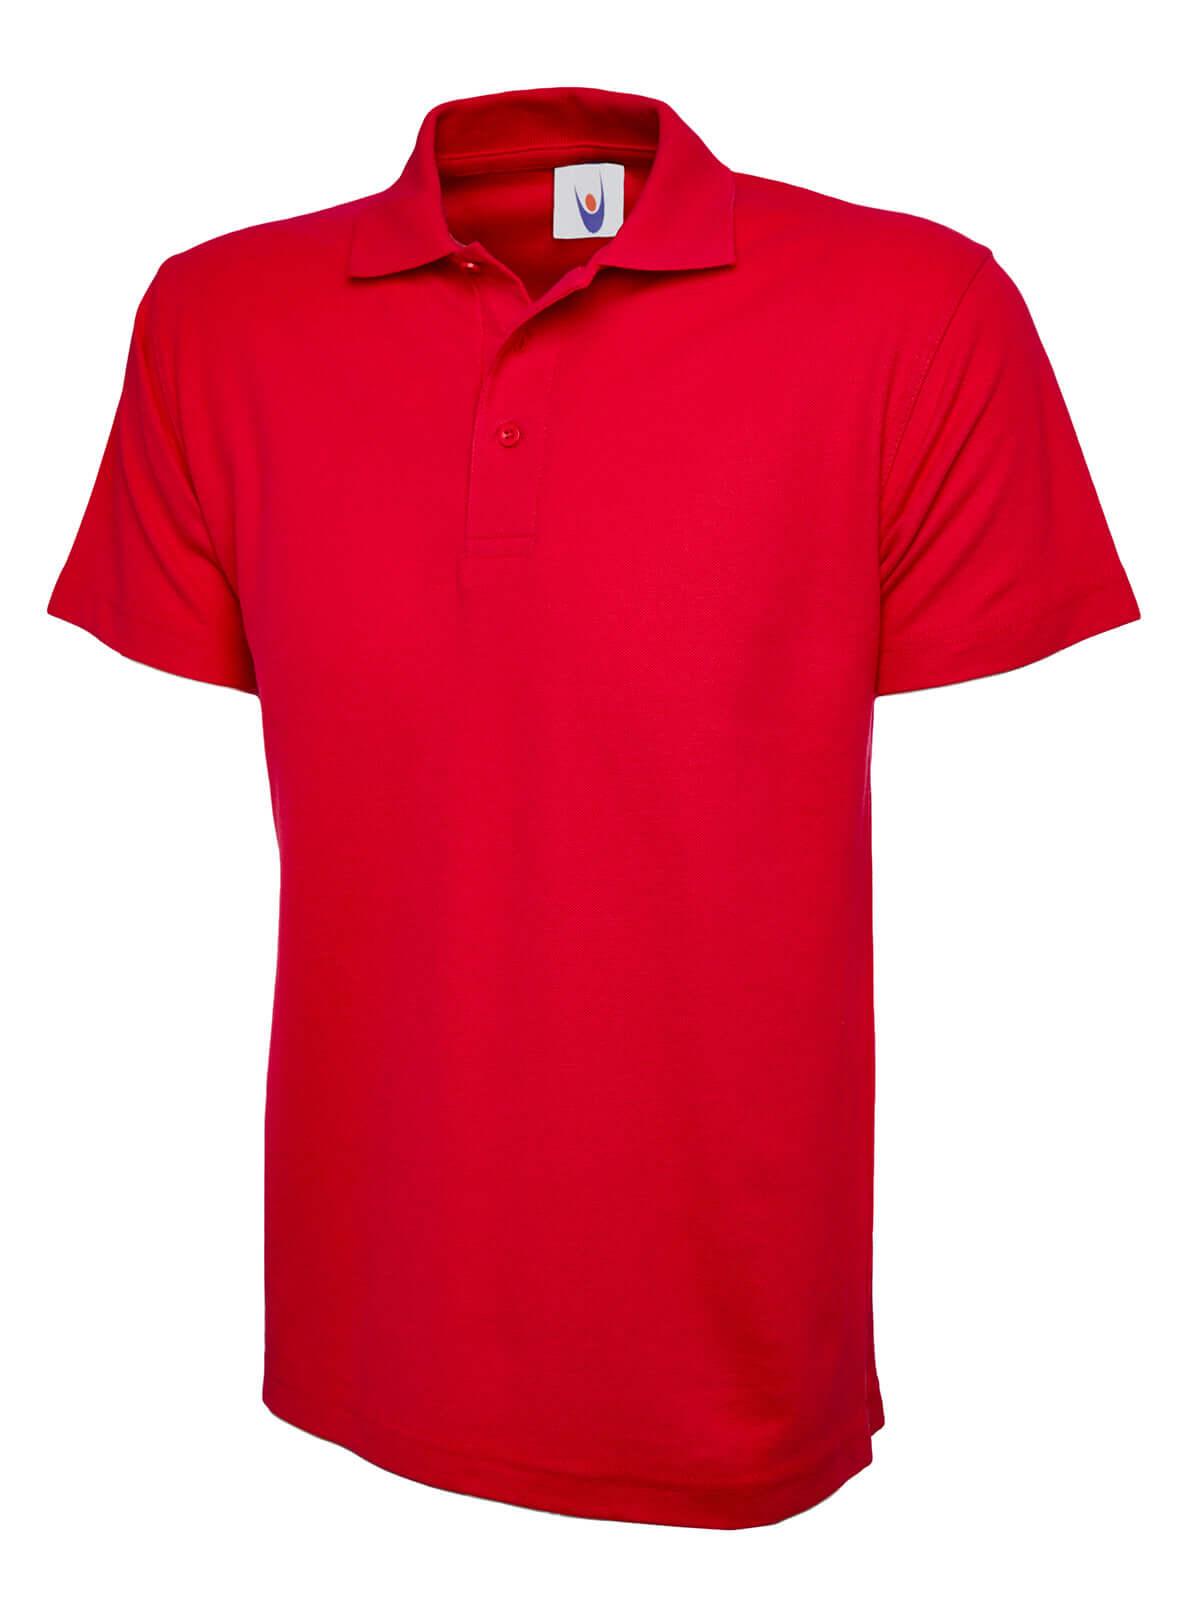 Pegasus Uniform Classic Unisex Polo Shirt - Red